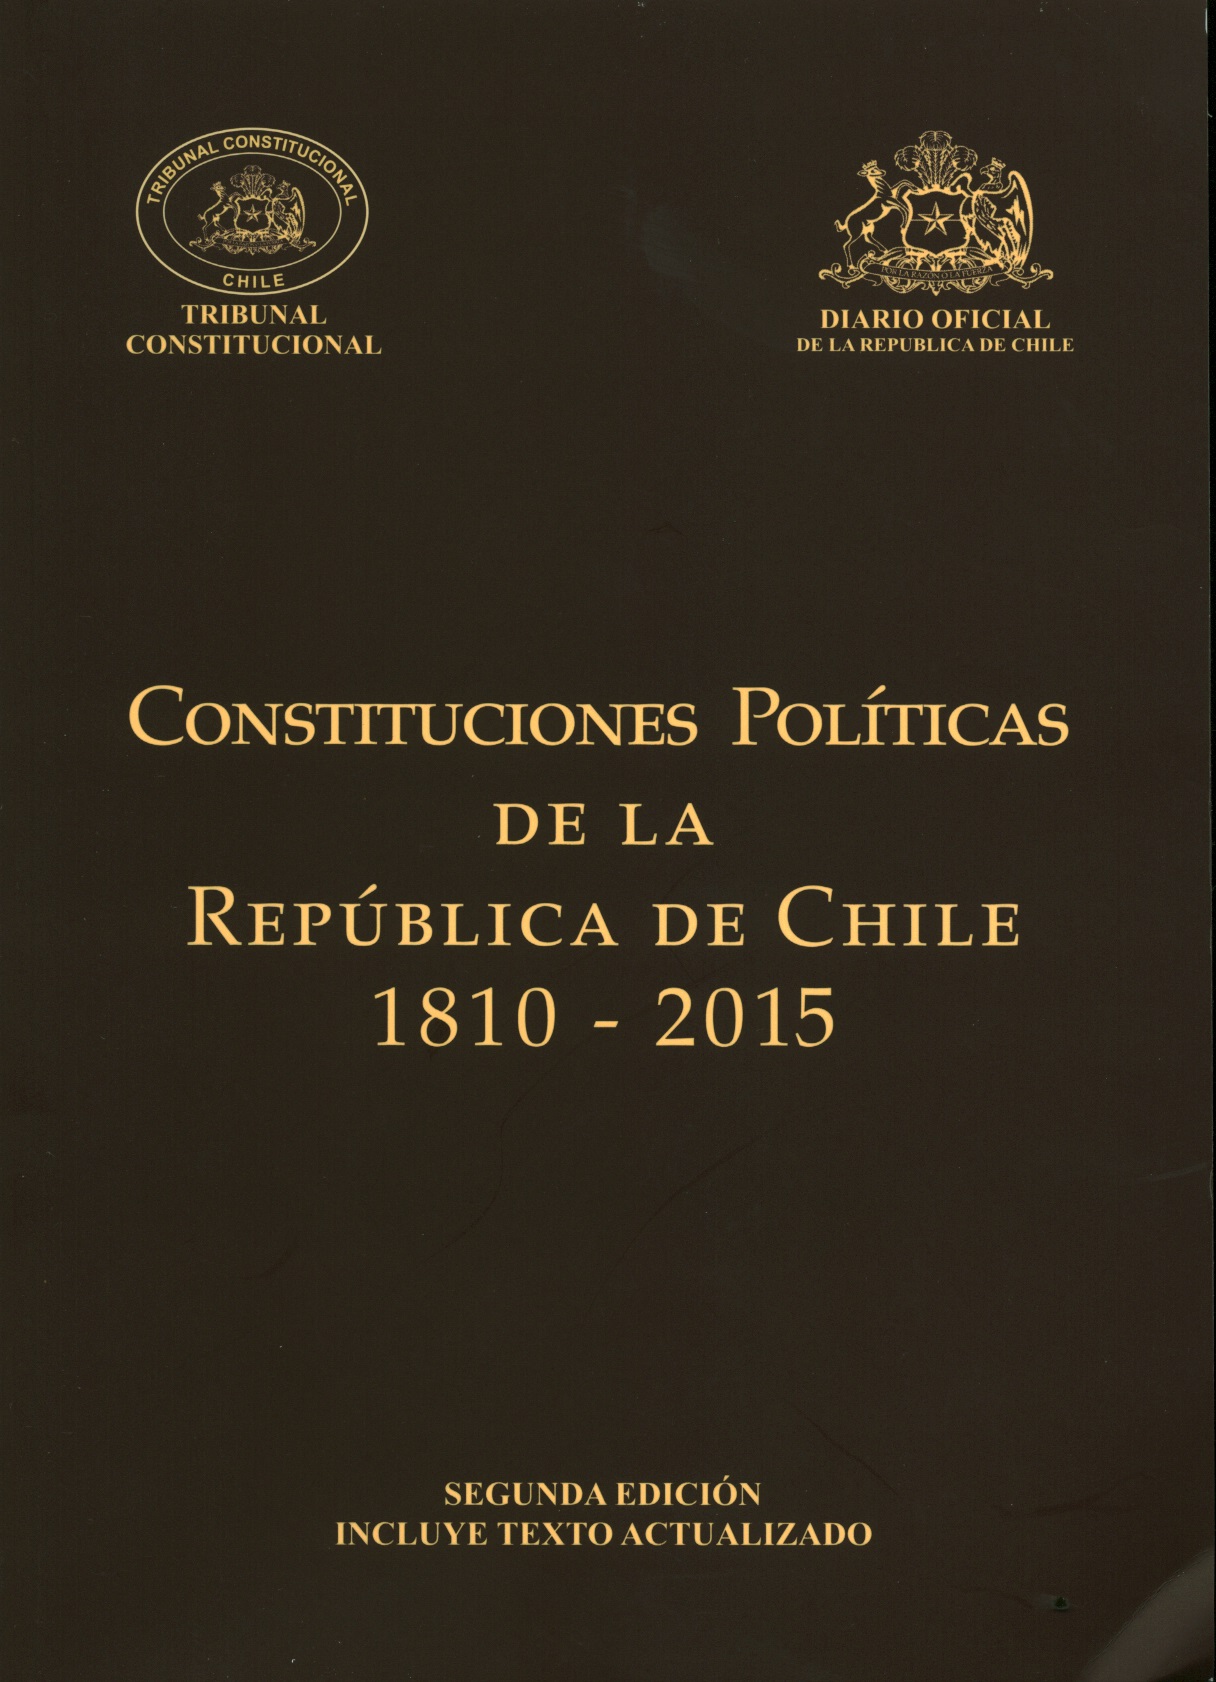 Constituciones Políticas de la República de Chile 1810-2015